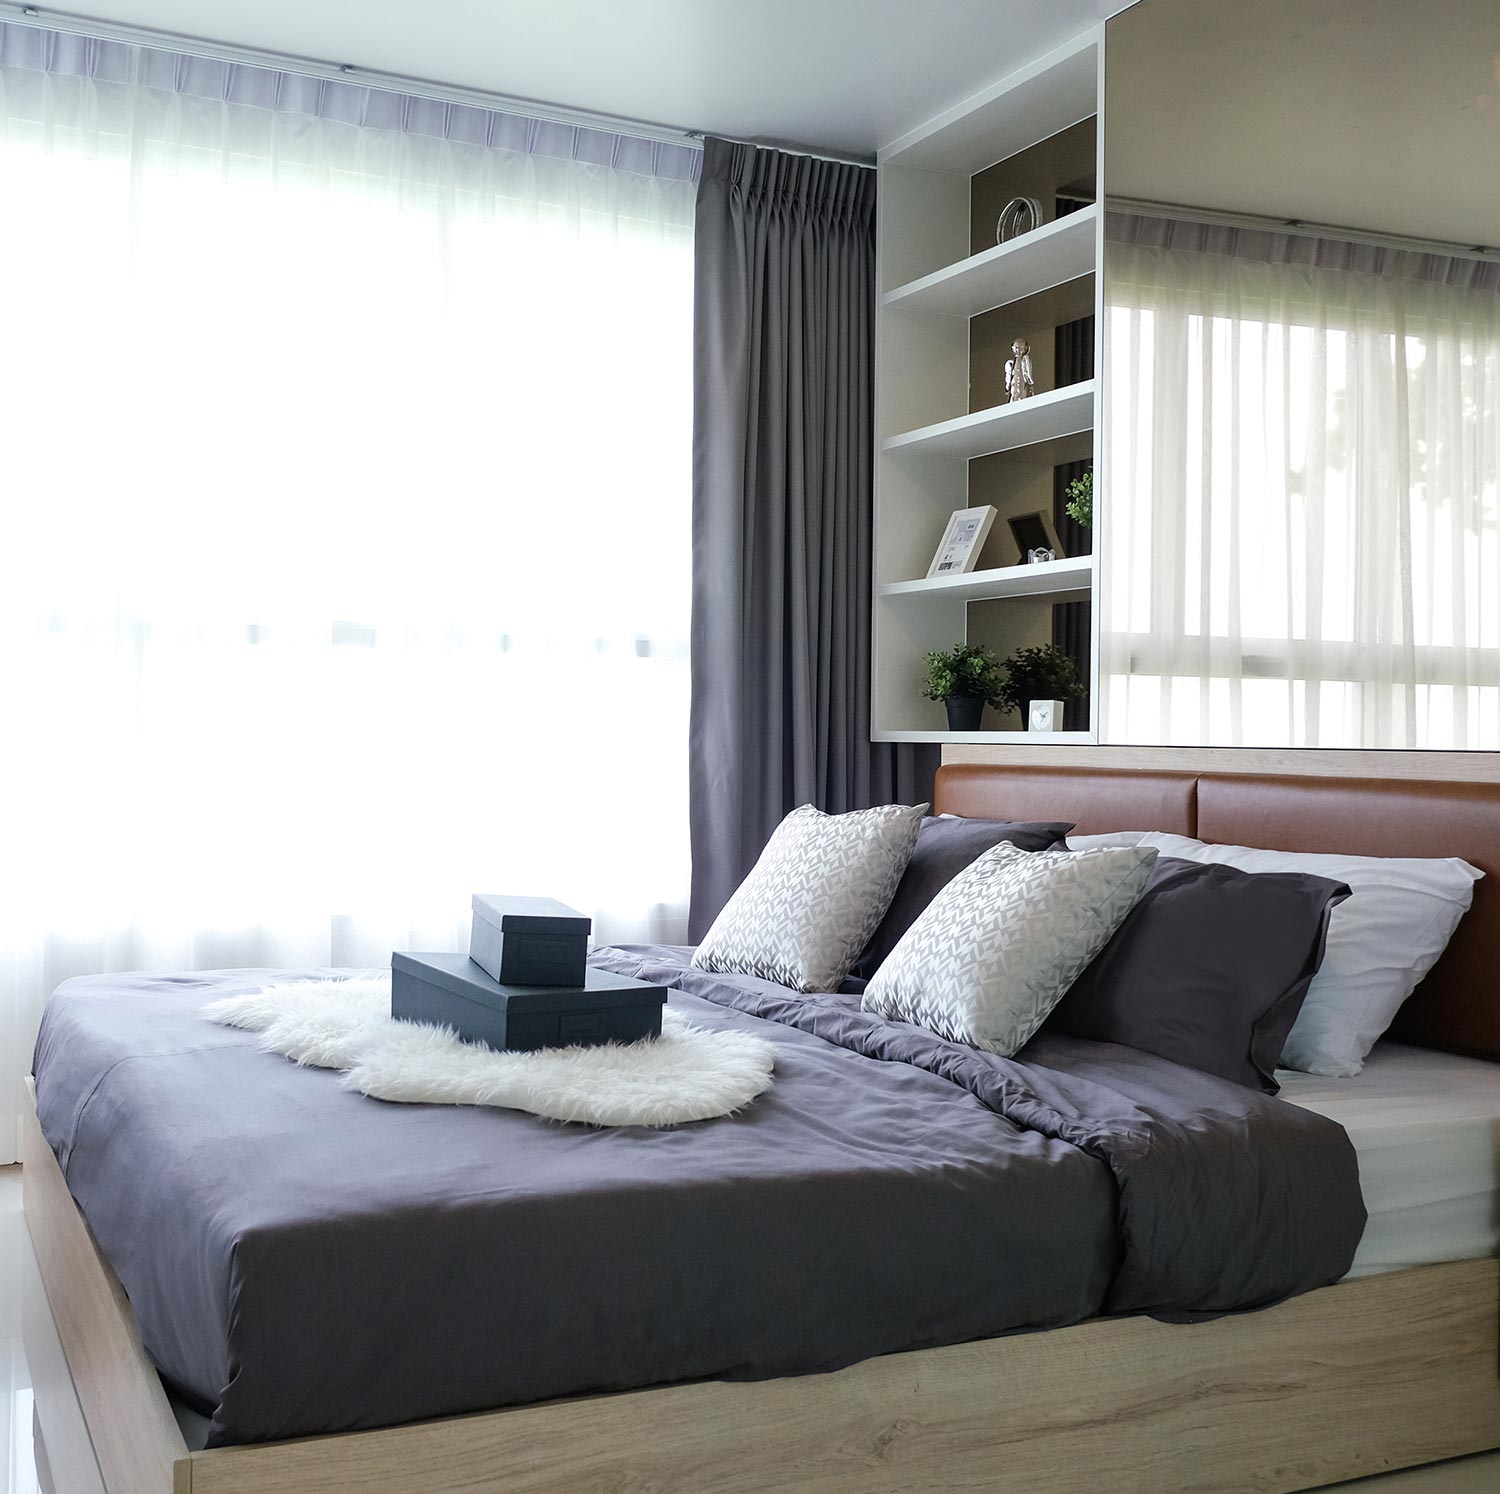 Wooden bed in room